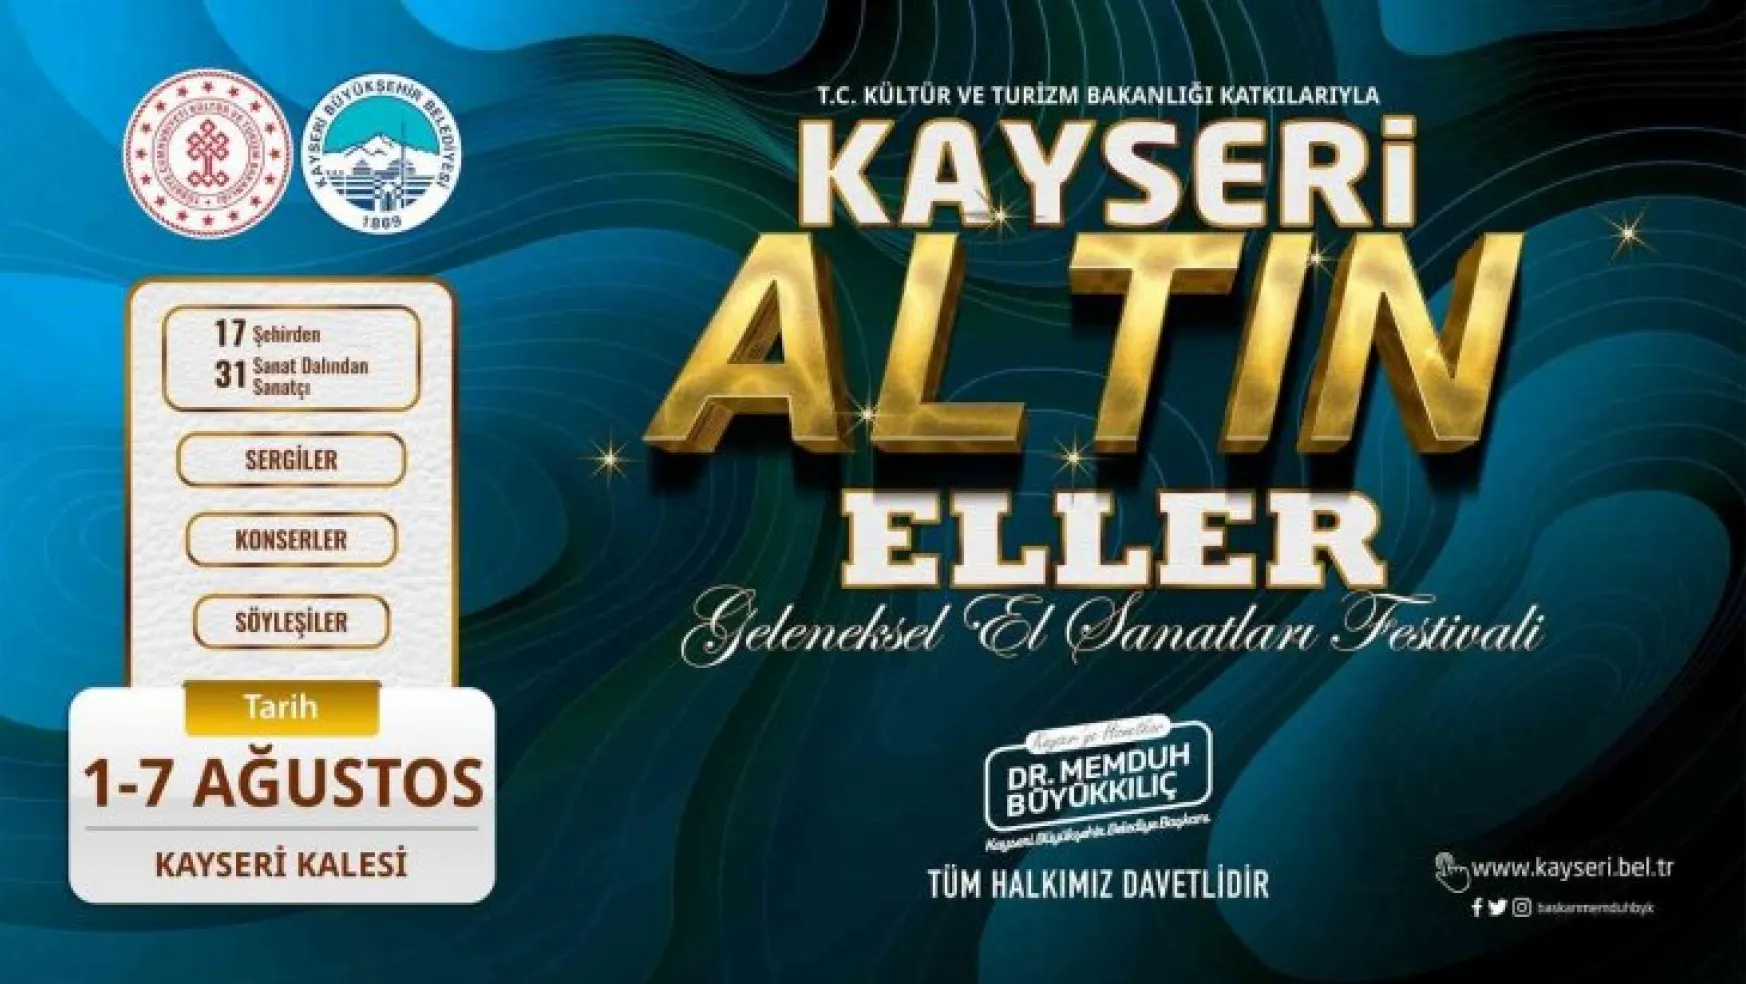 Kayseri 'Altın Eller Festivali' yarın başlıyor